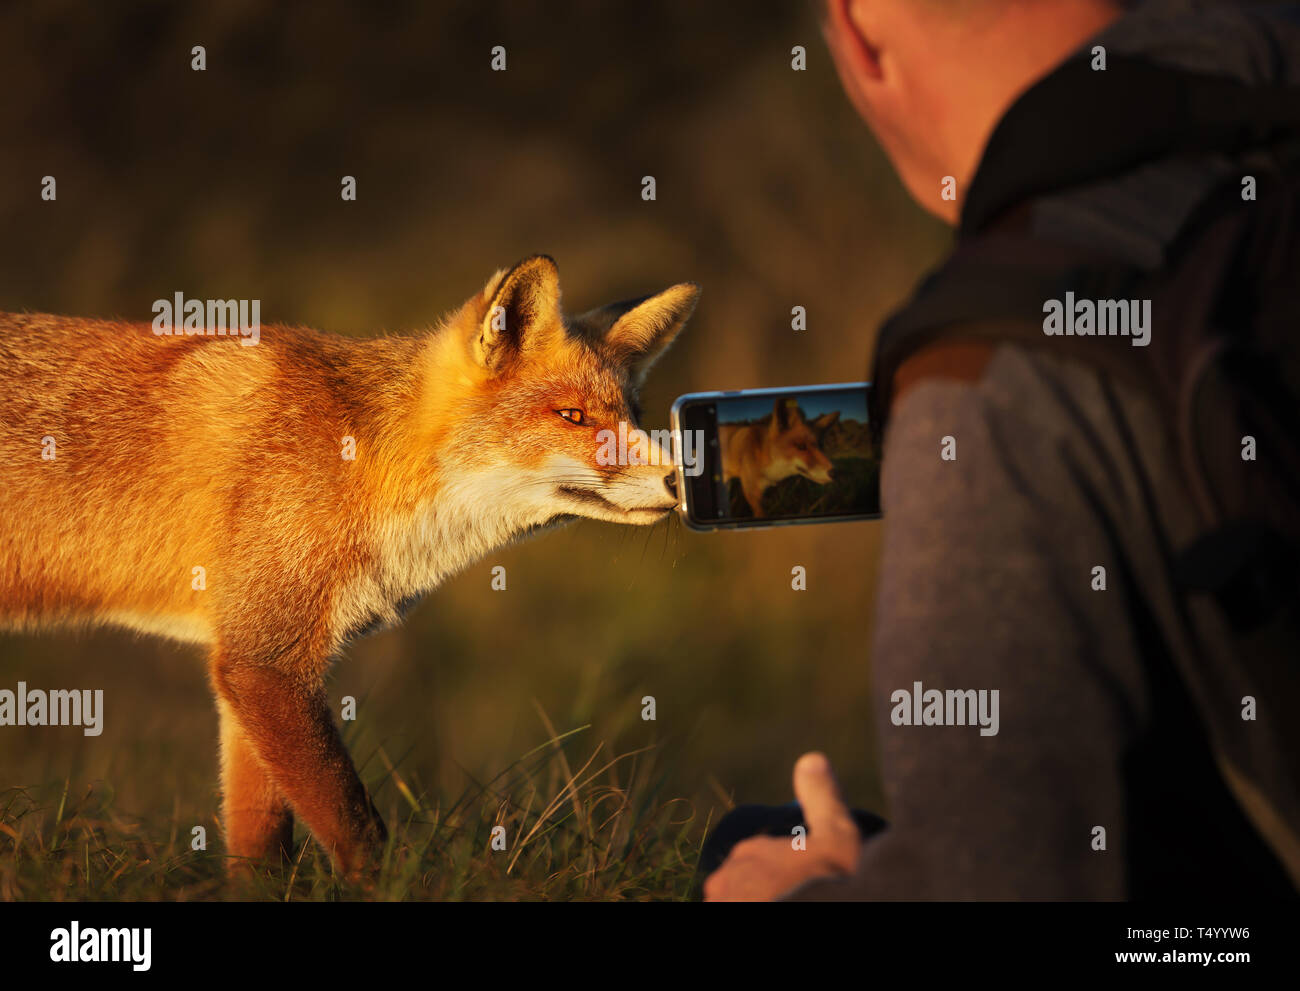 Fotografen, Bild von einem Red Fox mit einem Smartphone. Stockfoto